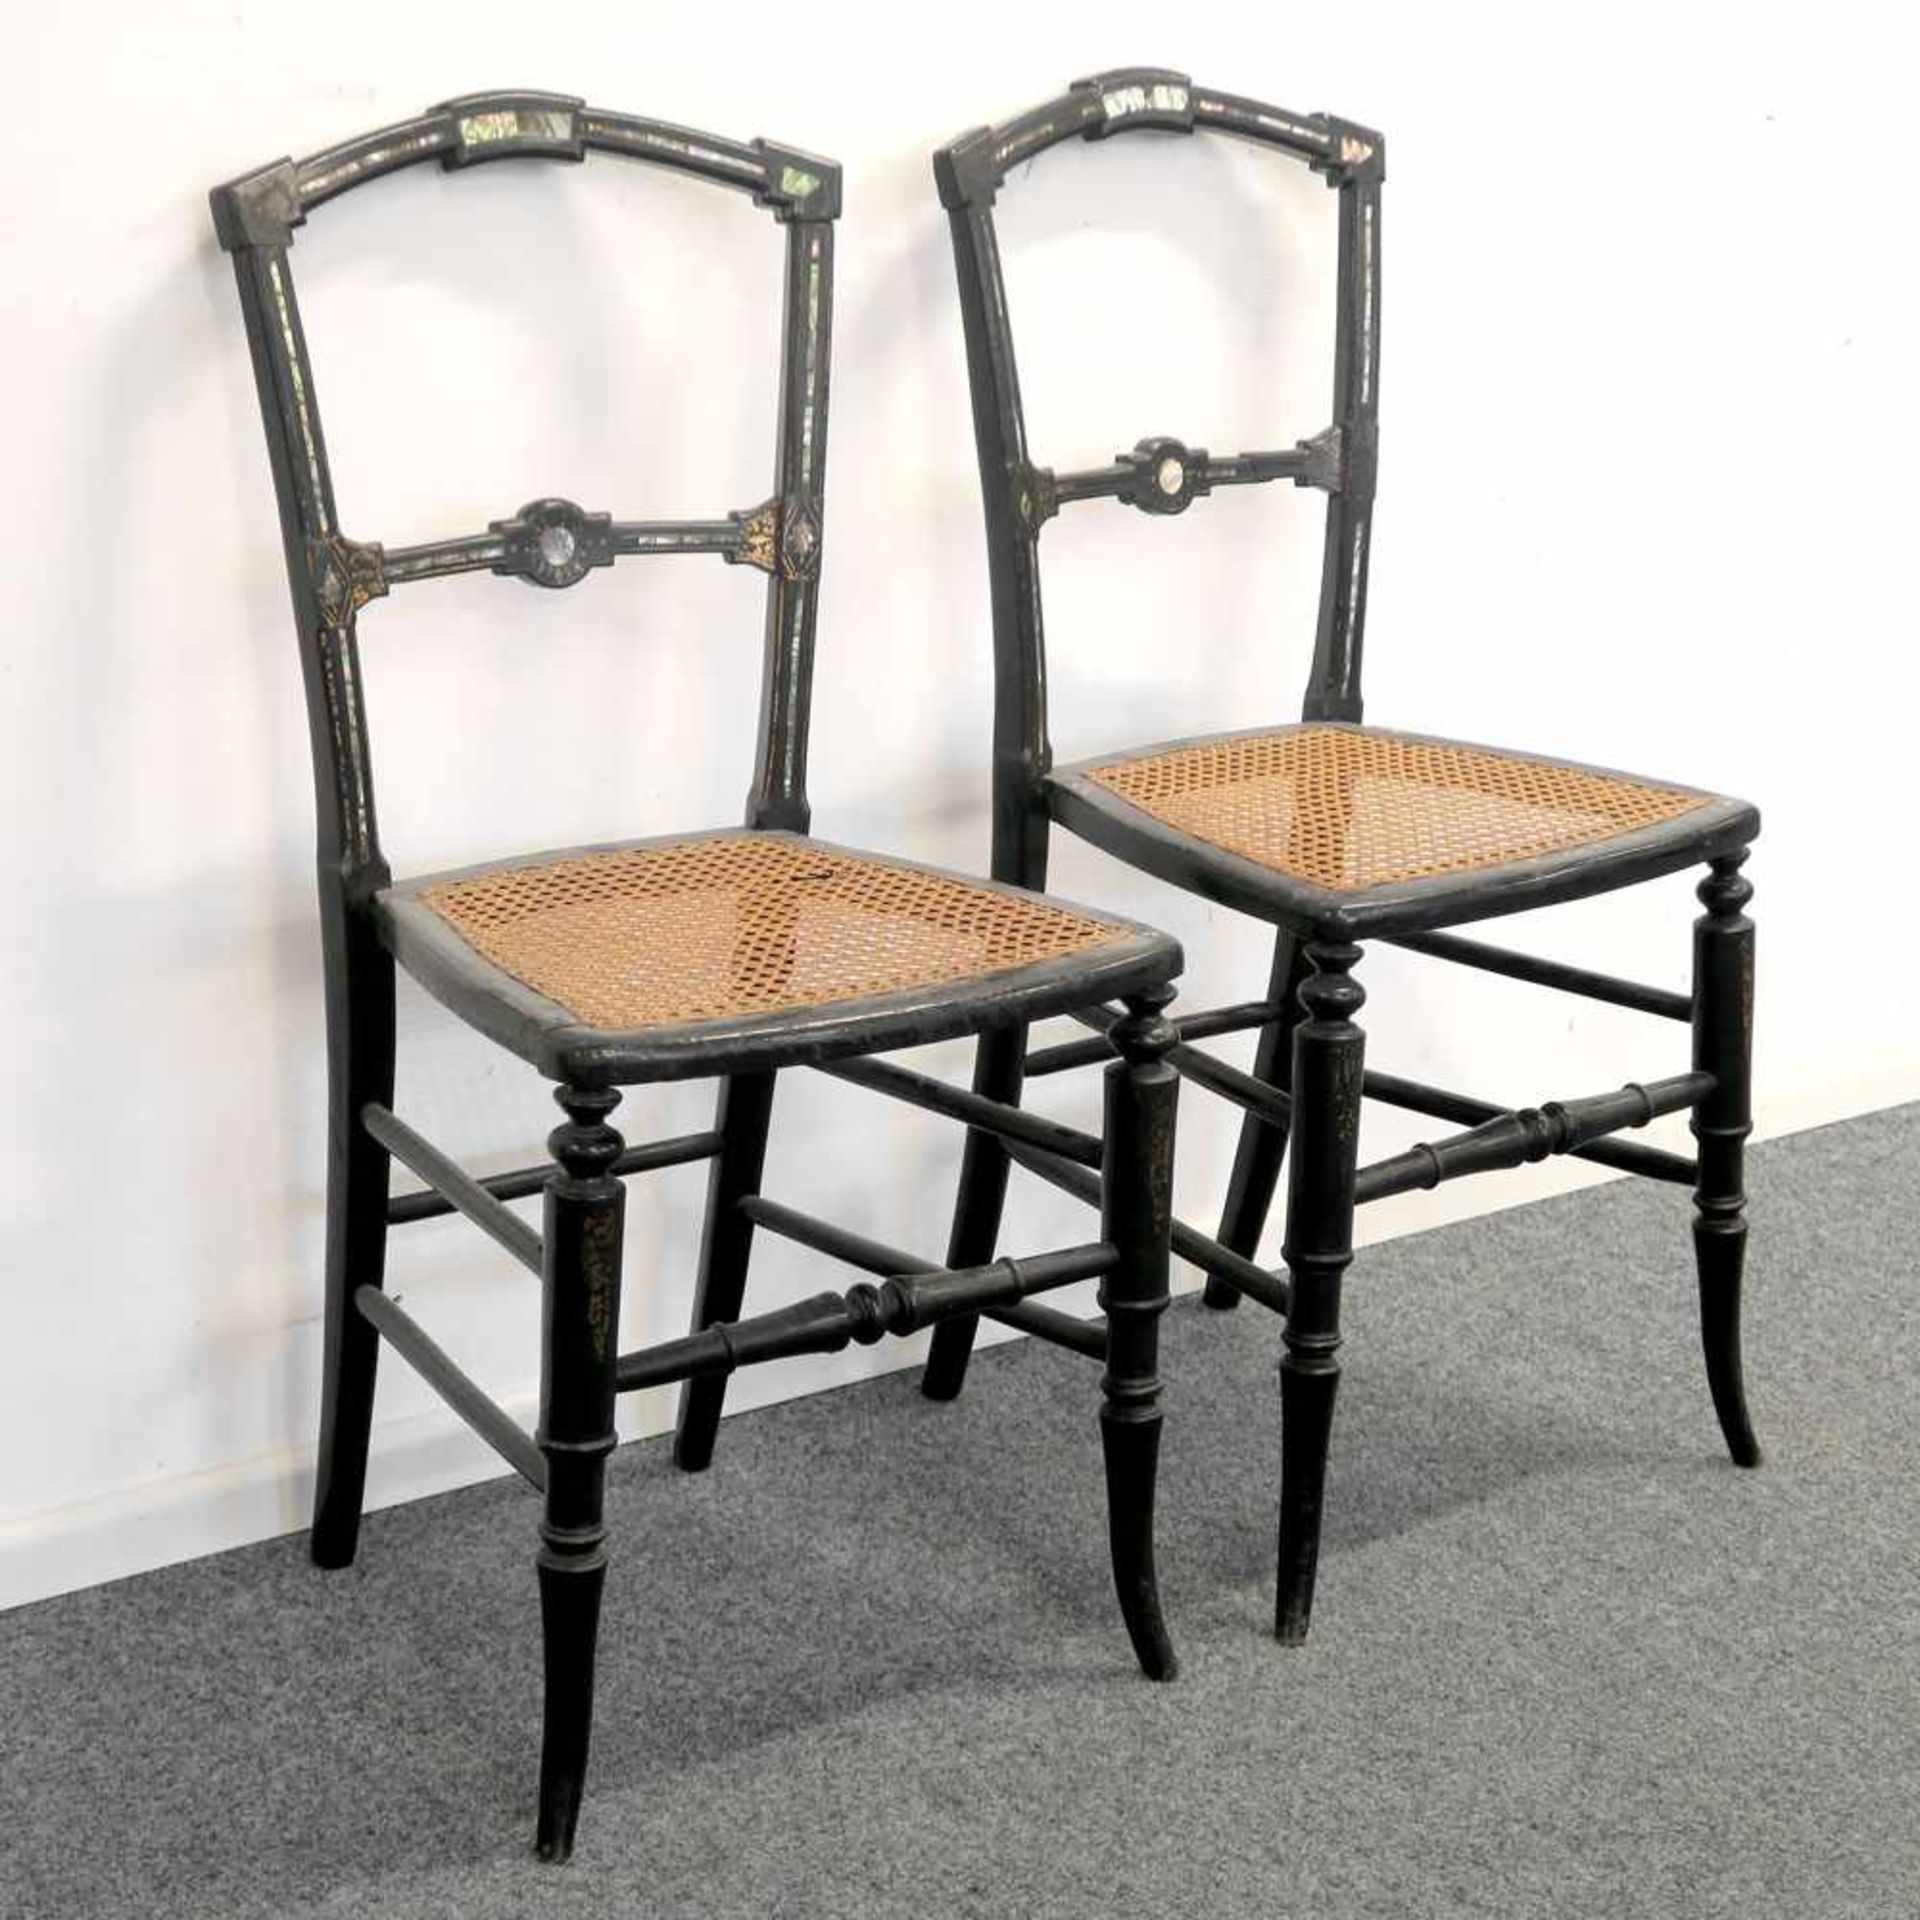 Ein Paar StühleHolz, gedrechselt, schwarz lackiert, mit gold-rotem Rankendekor bemalt,